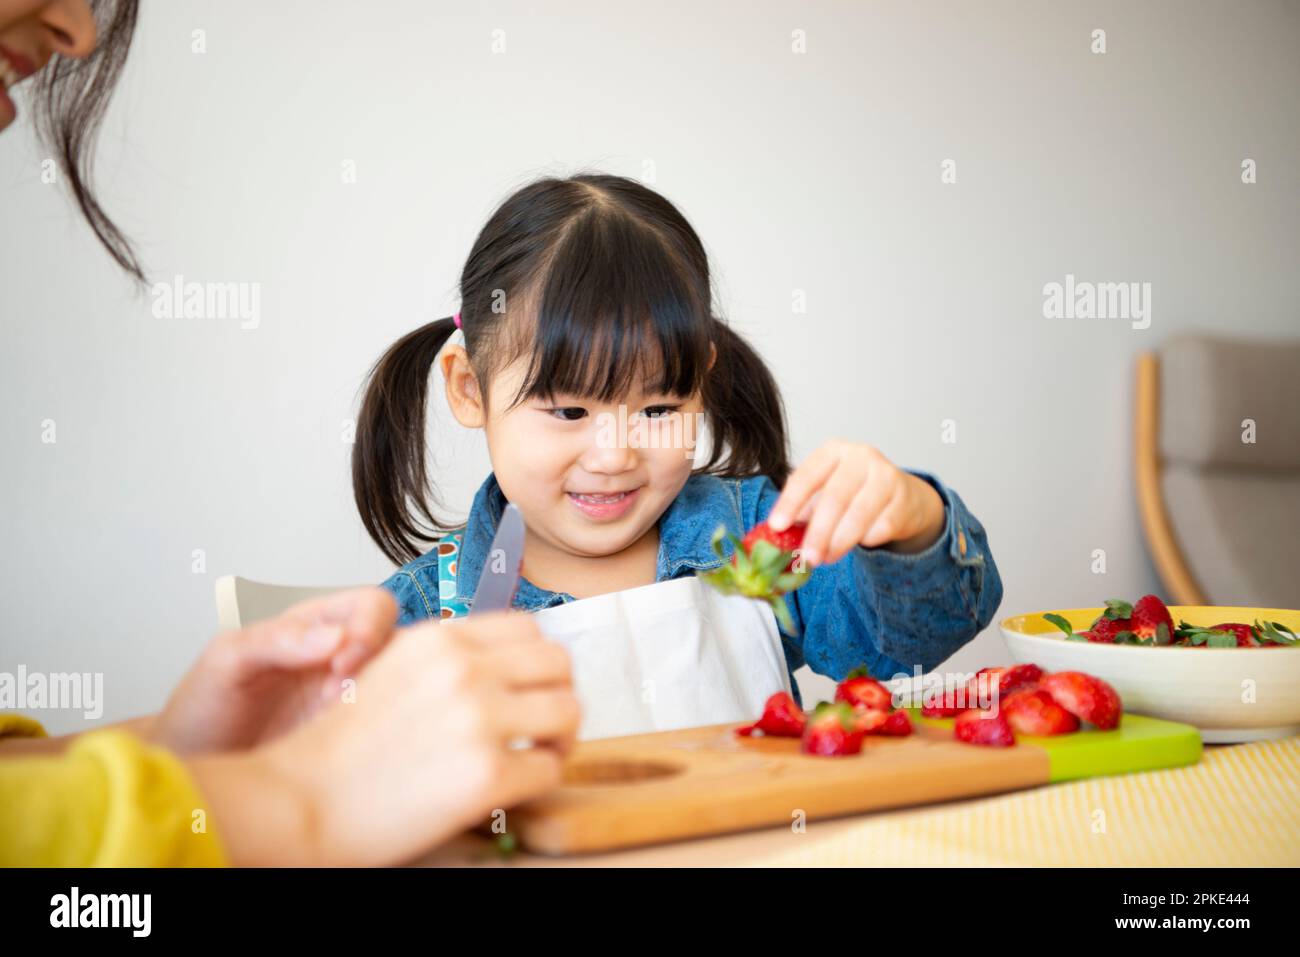 Girl cutting strawberries Stock Photo